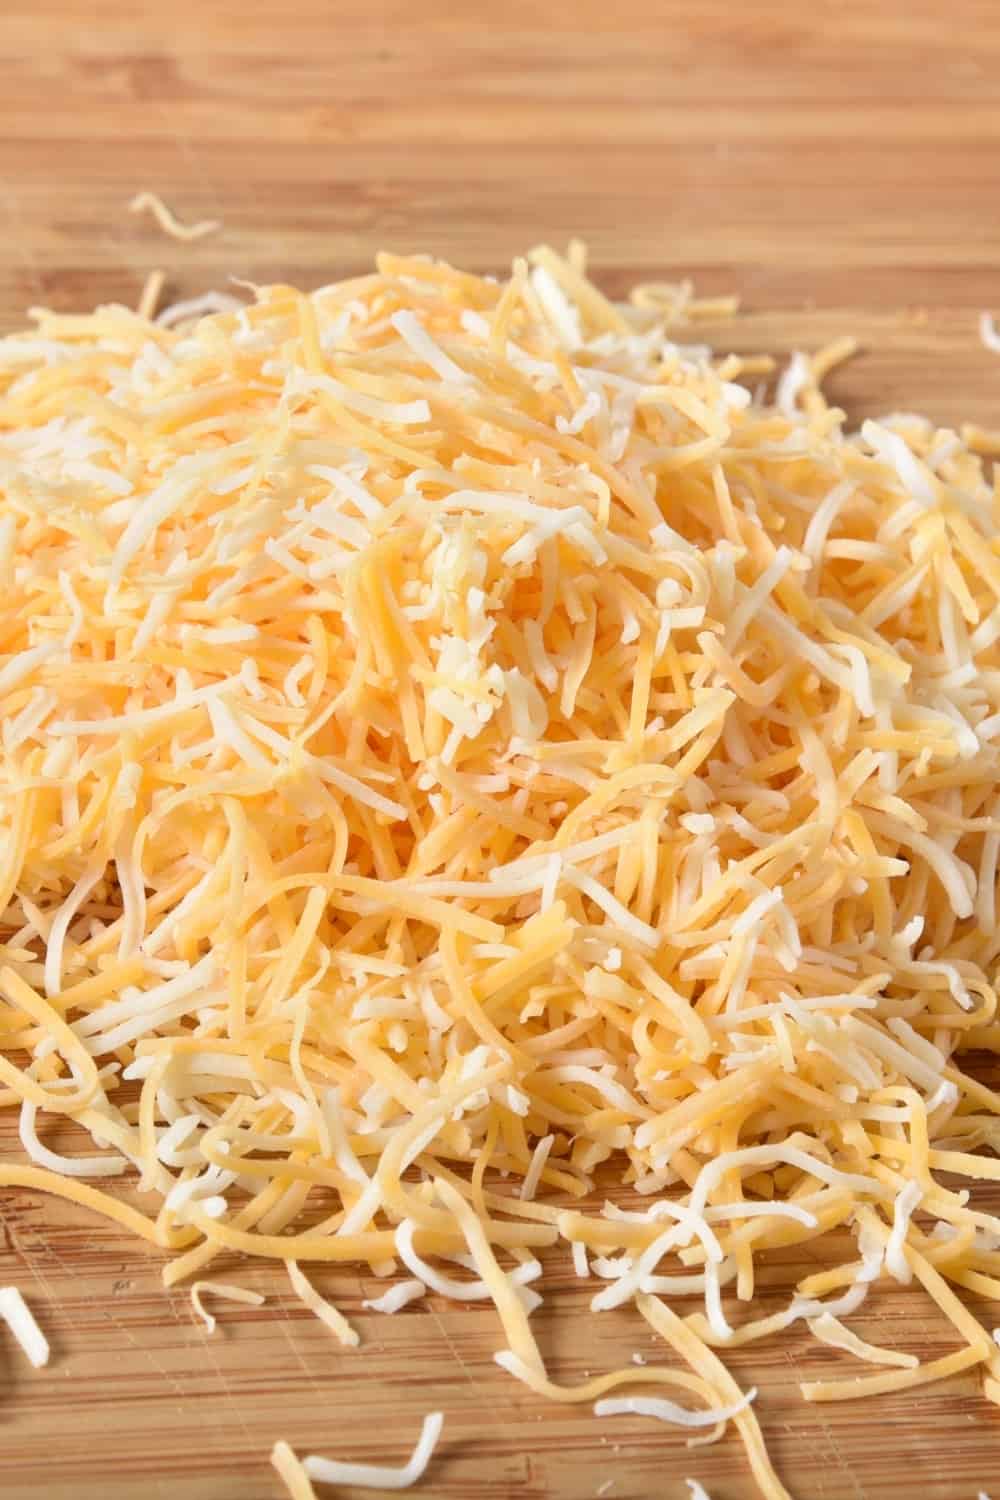 Una mezcla de quesos cheddar afilado, monterey jack, asadero y queso blanco finamente rallado